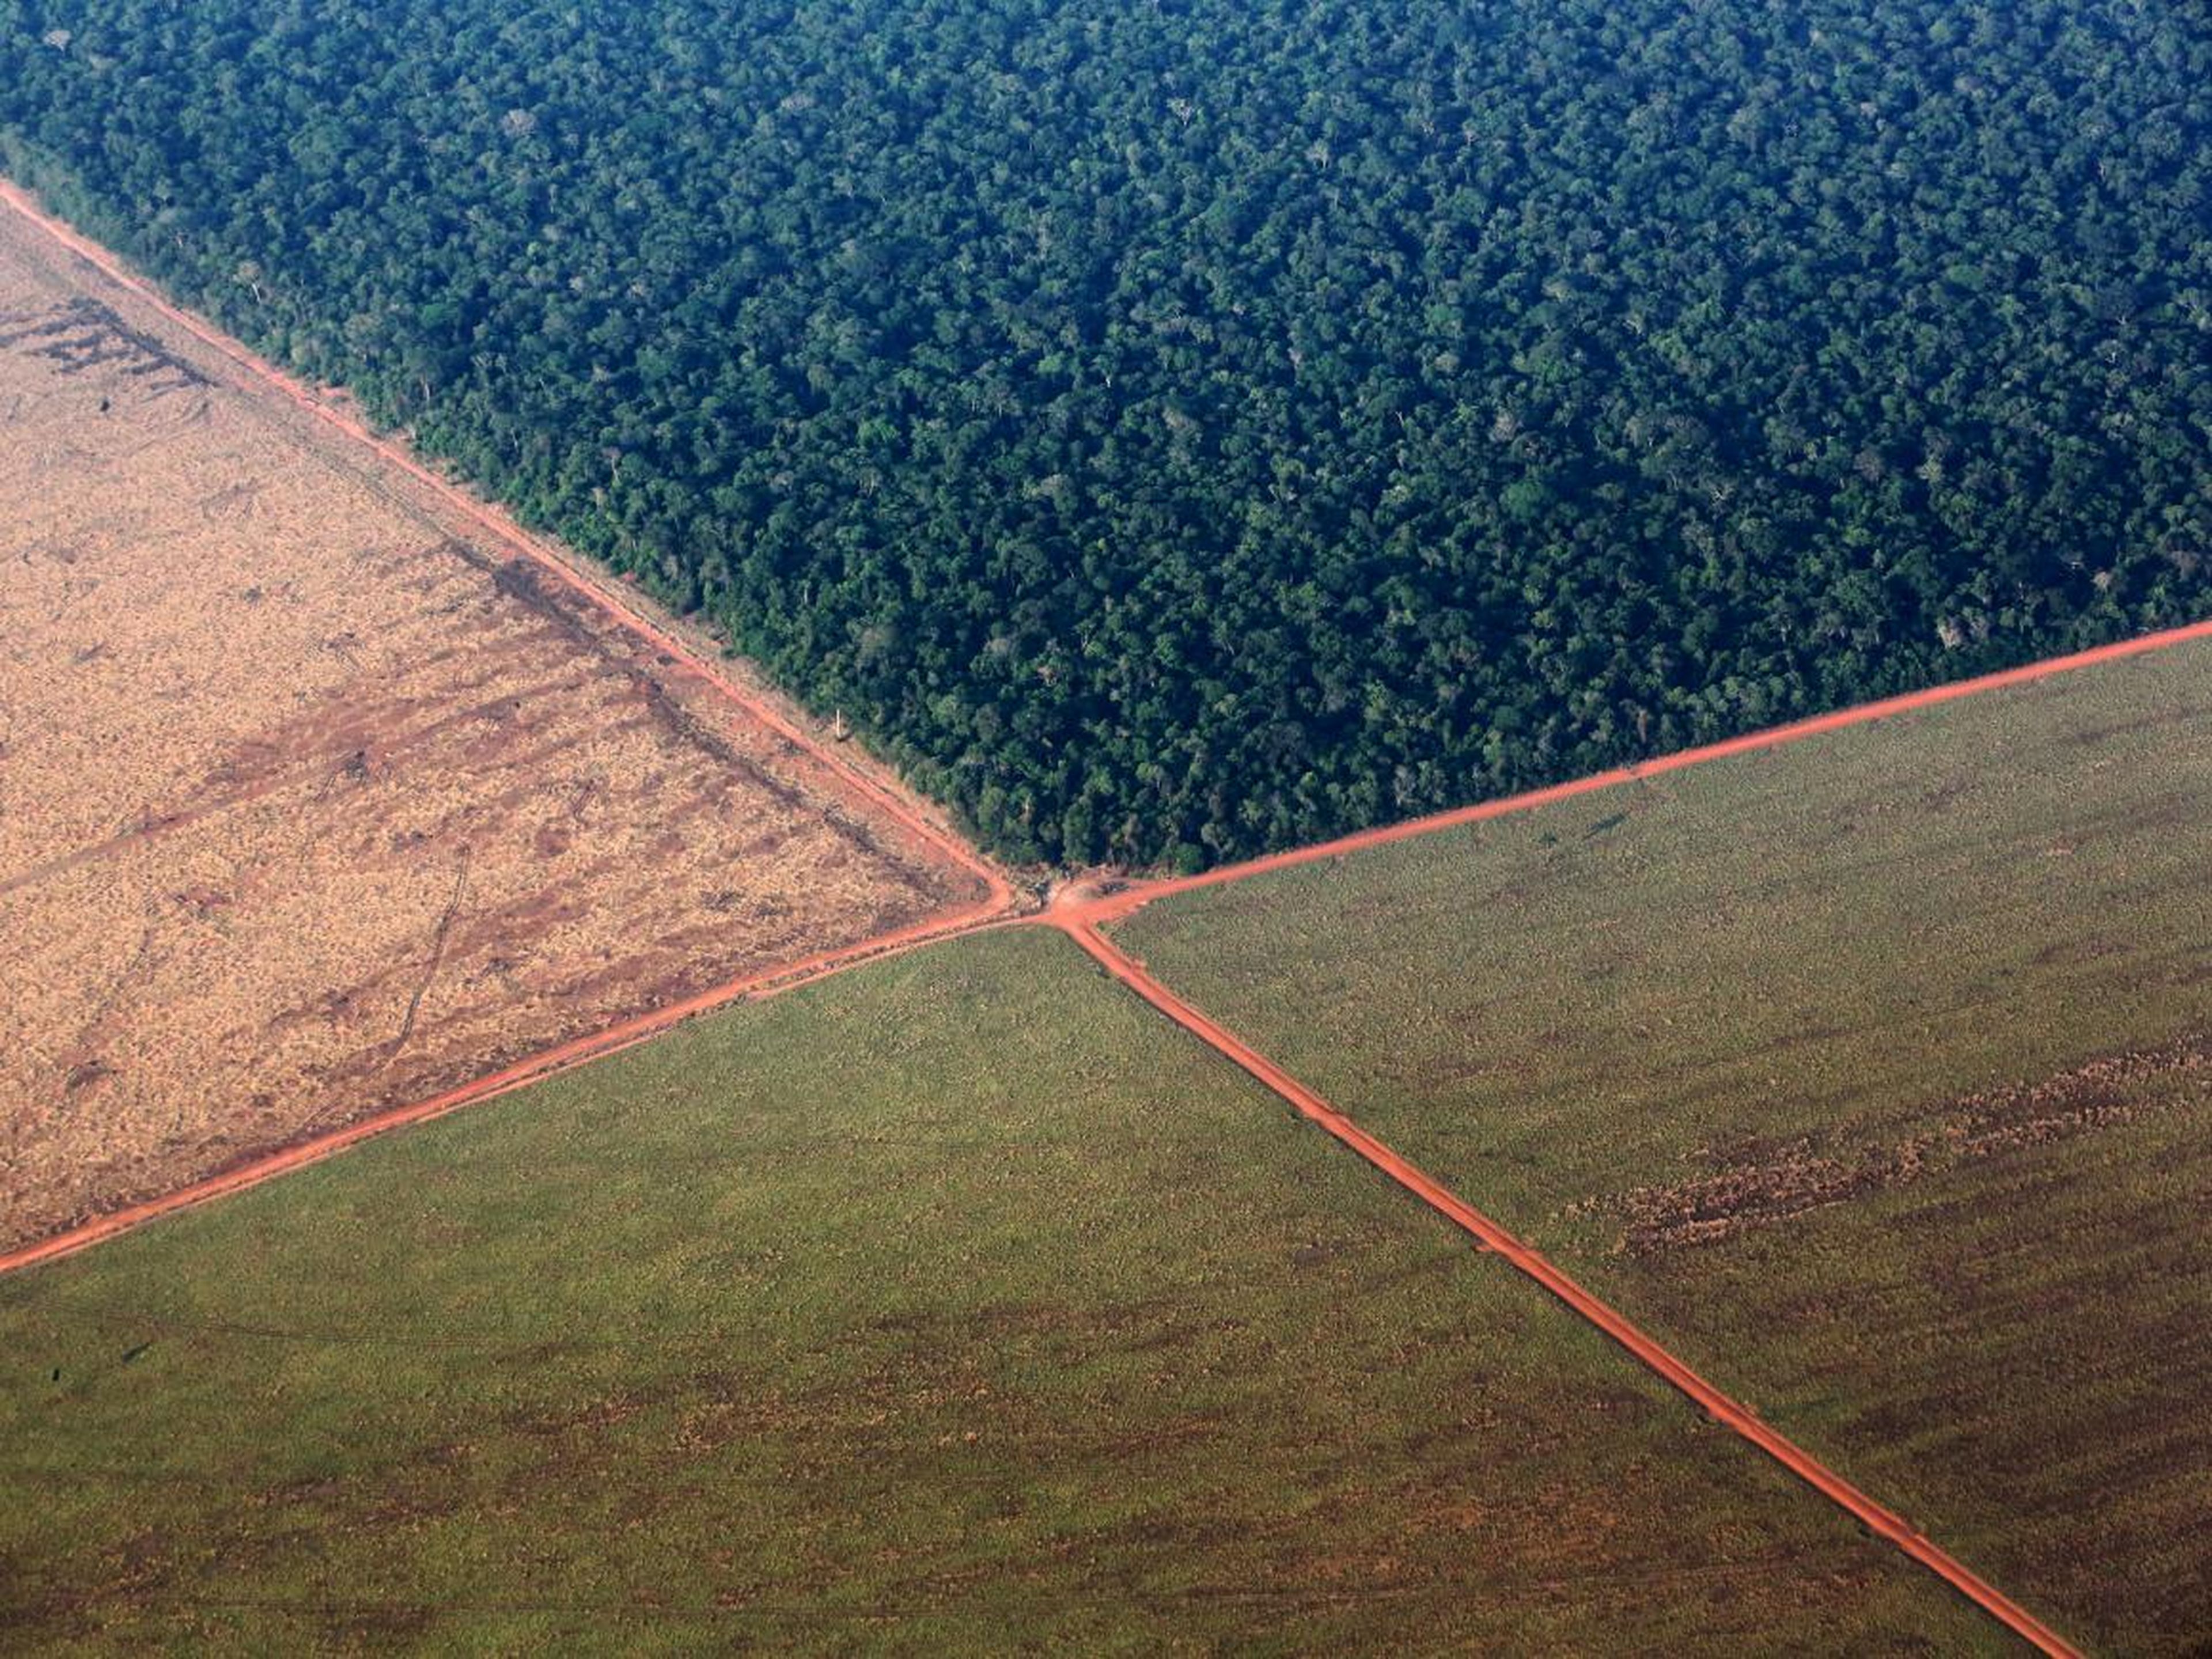 La selva amazónica, bordeada por tierras deforestadas y preparadas para la siembra de soja, en el estado brasileño de Mato Grosso.